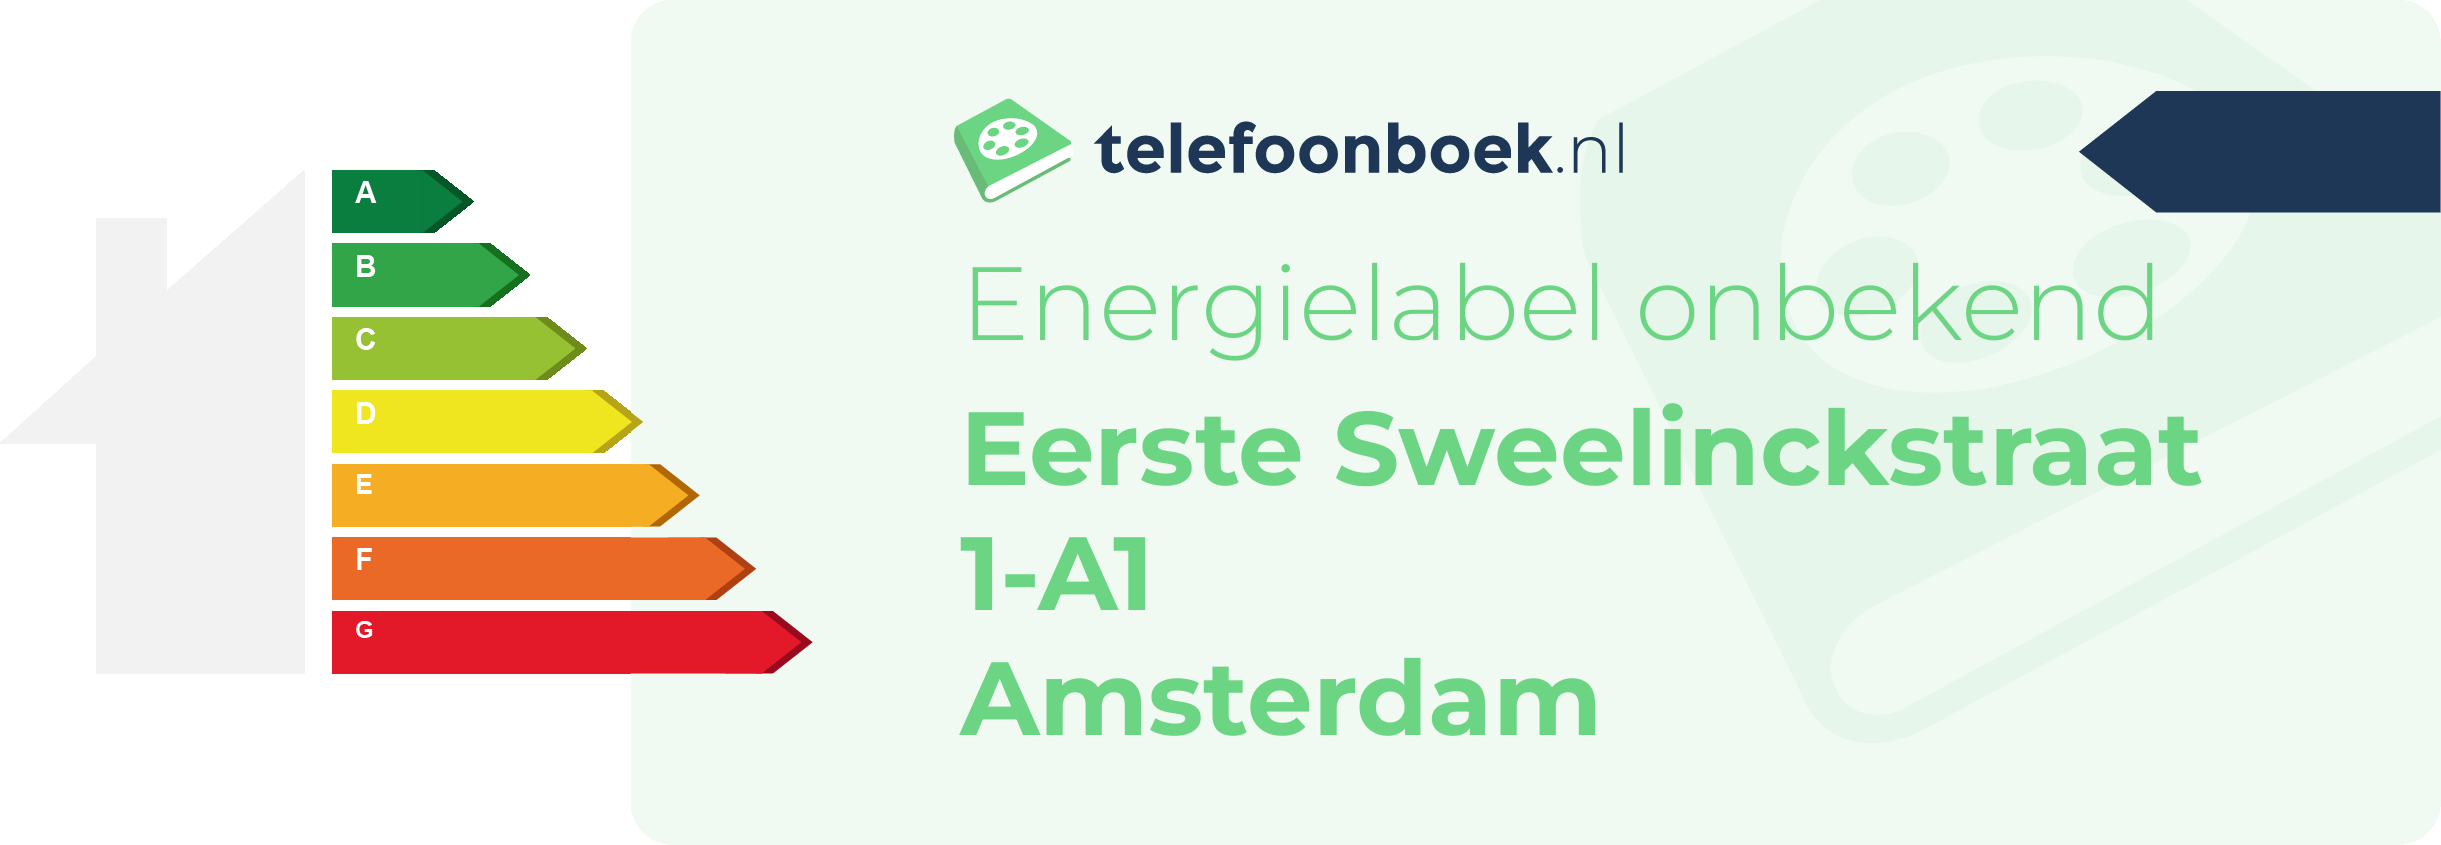 Energielabel Eerste Sweelinckstraat 1-A1 Amsterdam